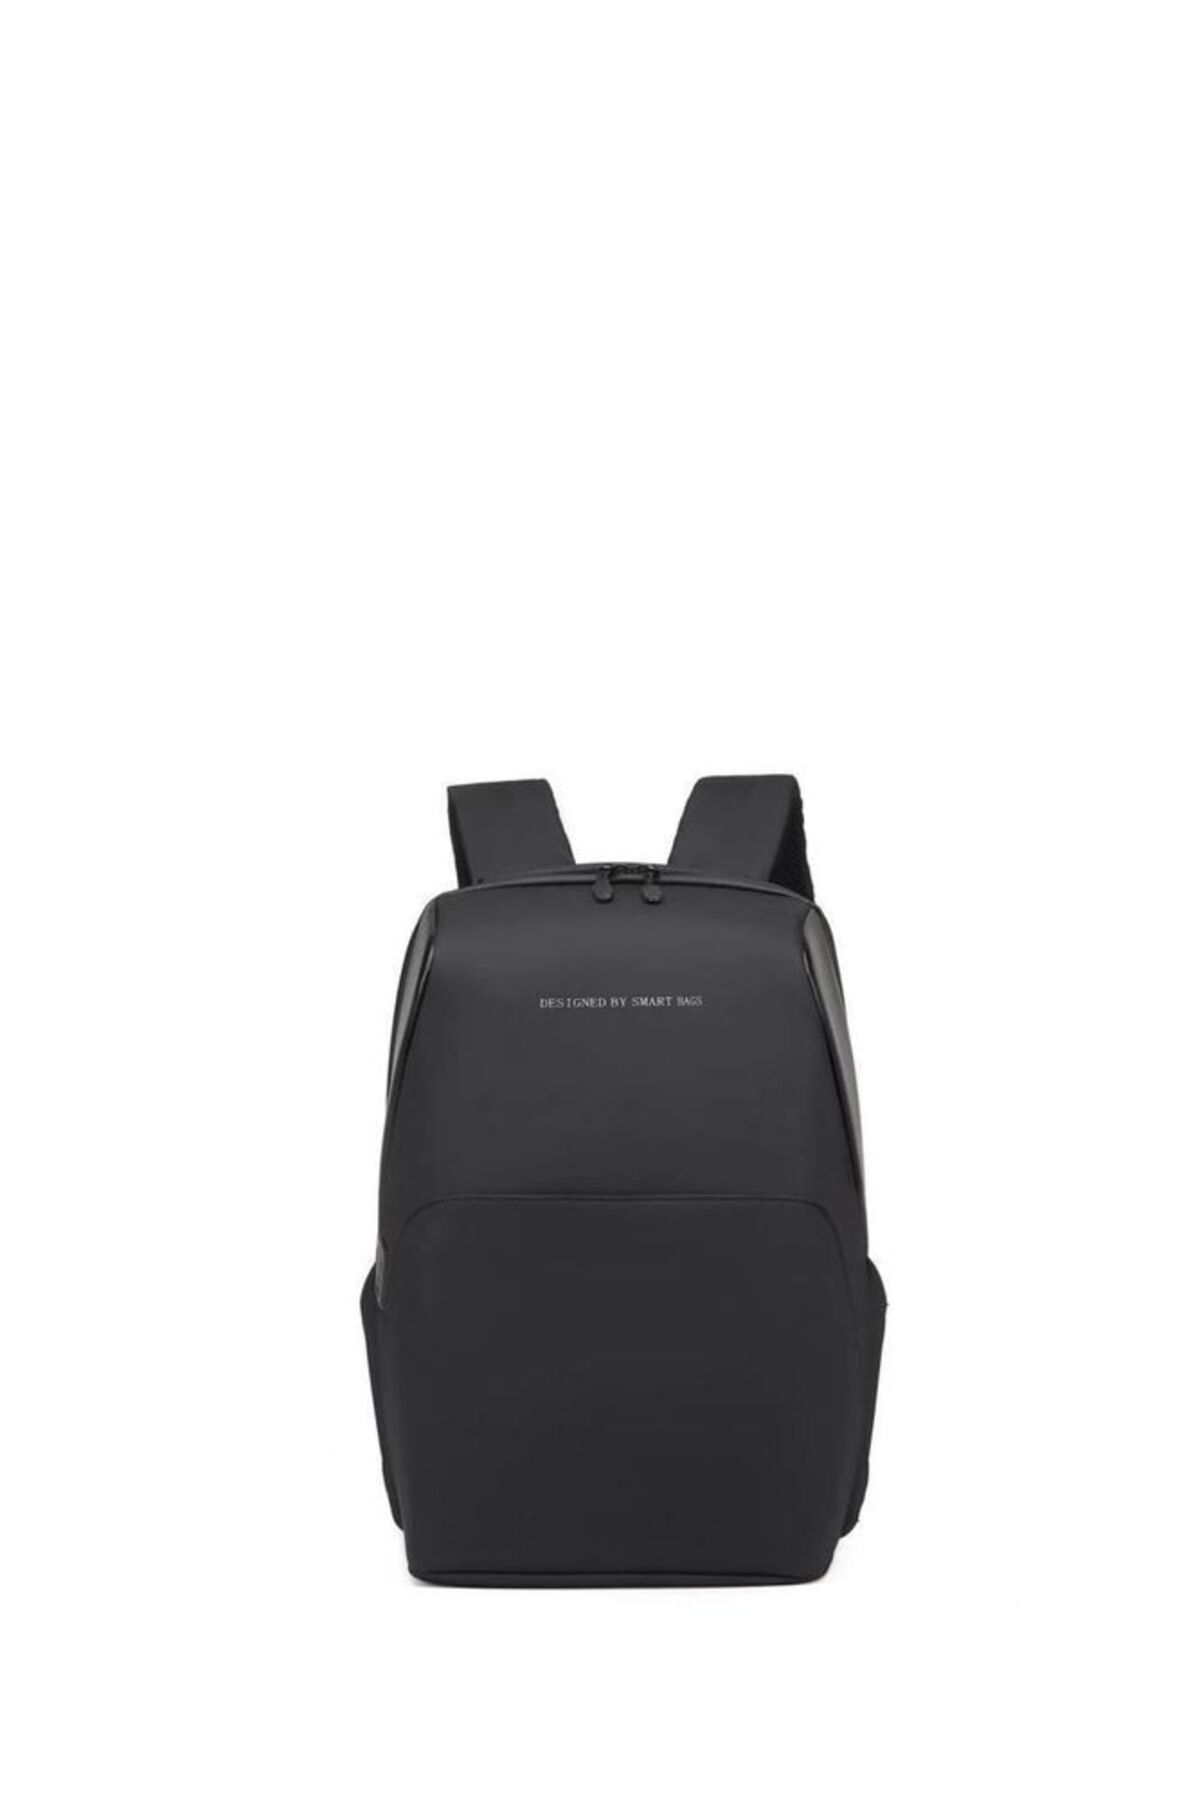 Smart Bags Tablet Boyu Teknoloji Business Sırt Çantası 8648-01